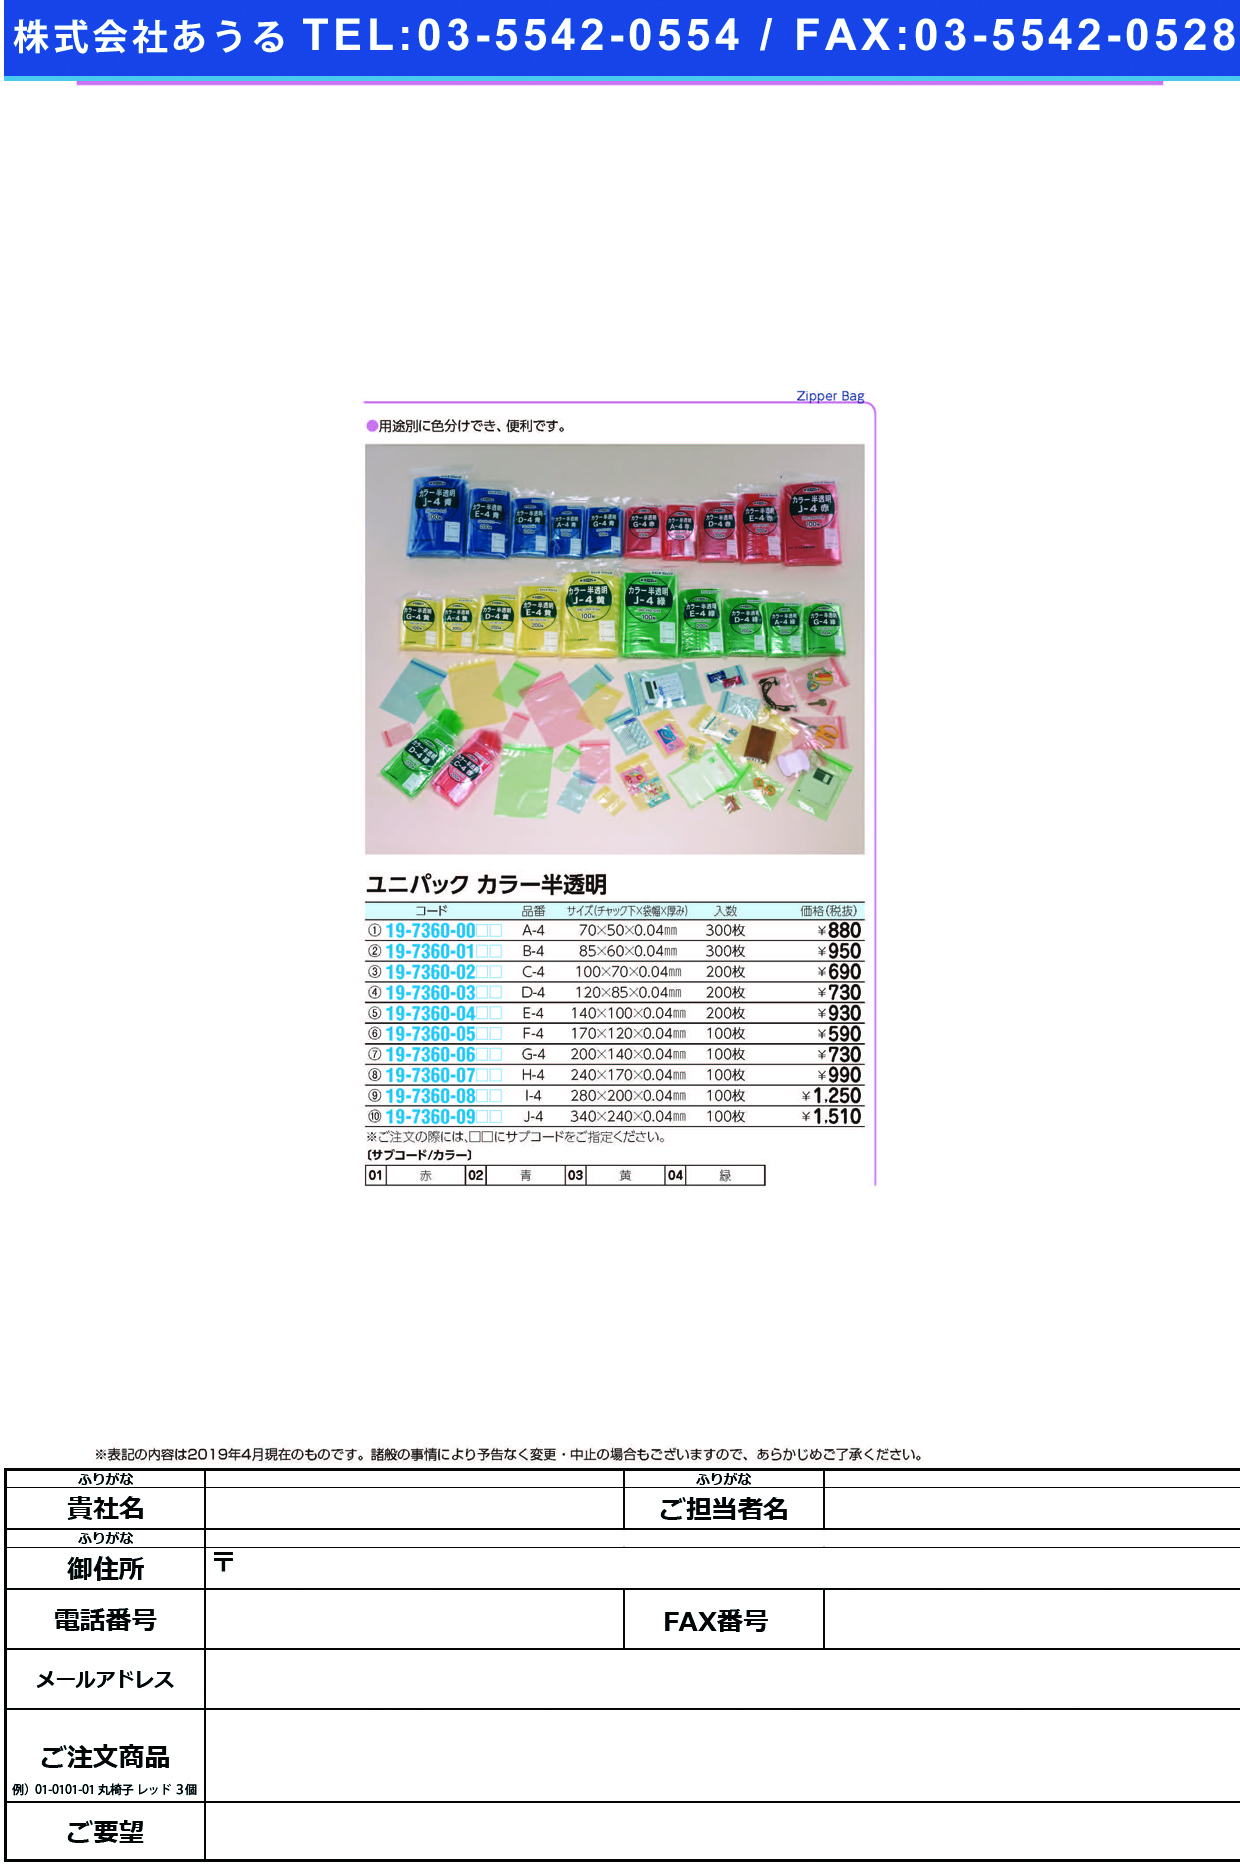 (19-7360-03)ユニパックカラー半透明 D-4(200ﾏｲｲﾘ) ﾕﾆﾊﾟｯｸｶﾗｰﾊﾝﾄｳﾒｲ 赤【1袋単位】【2019年カタログ商品】